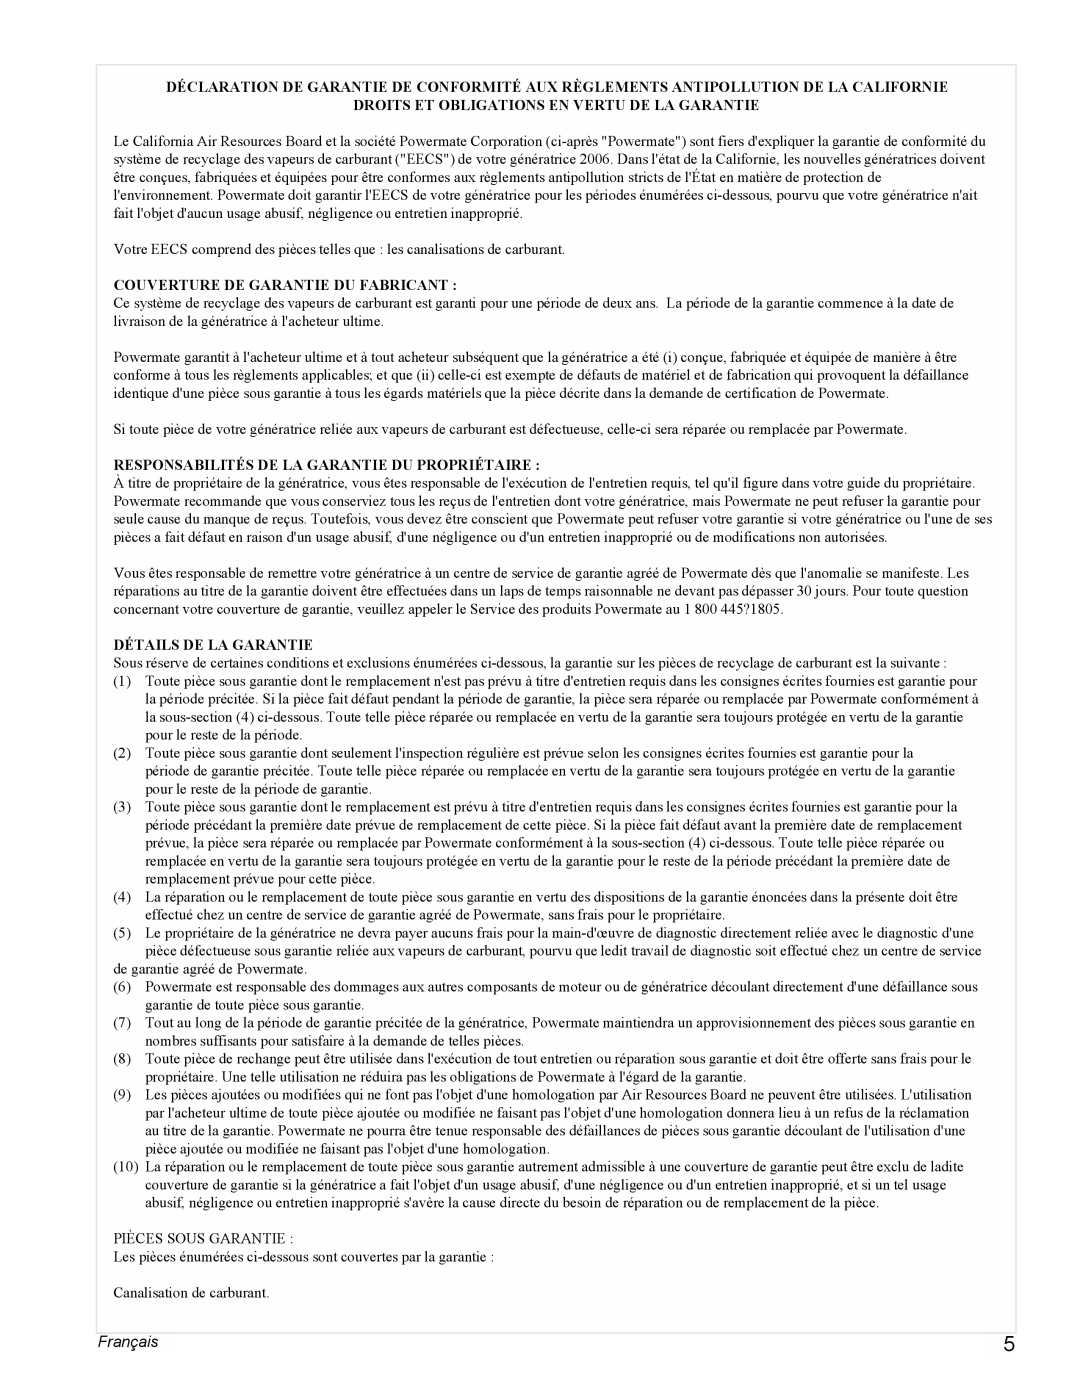 Powermate PMC603250 manual Français, Droits Et Obligations En Vertu De La Garantie, Couverture De Garantie Du Fabricant 